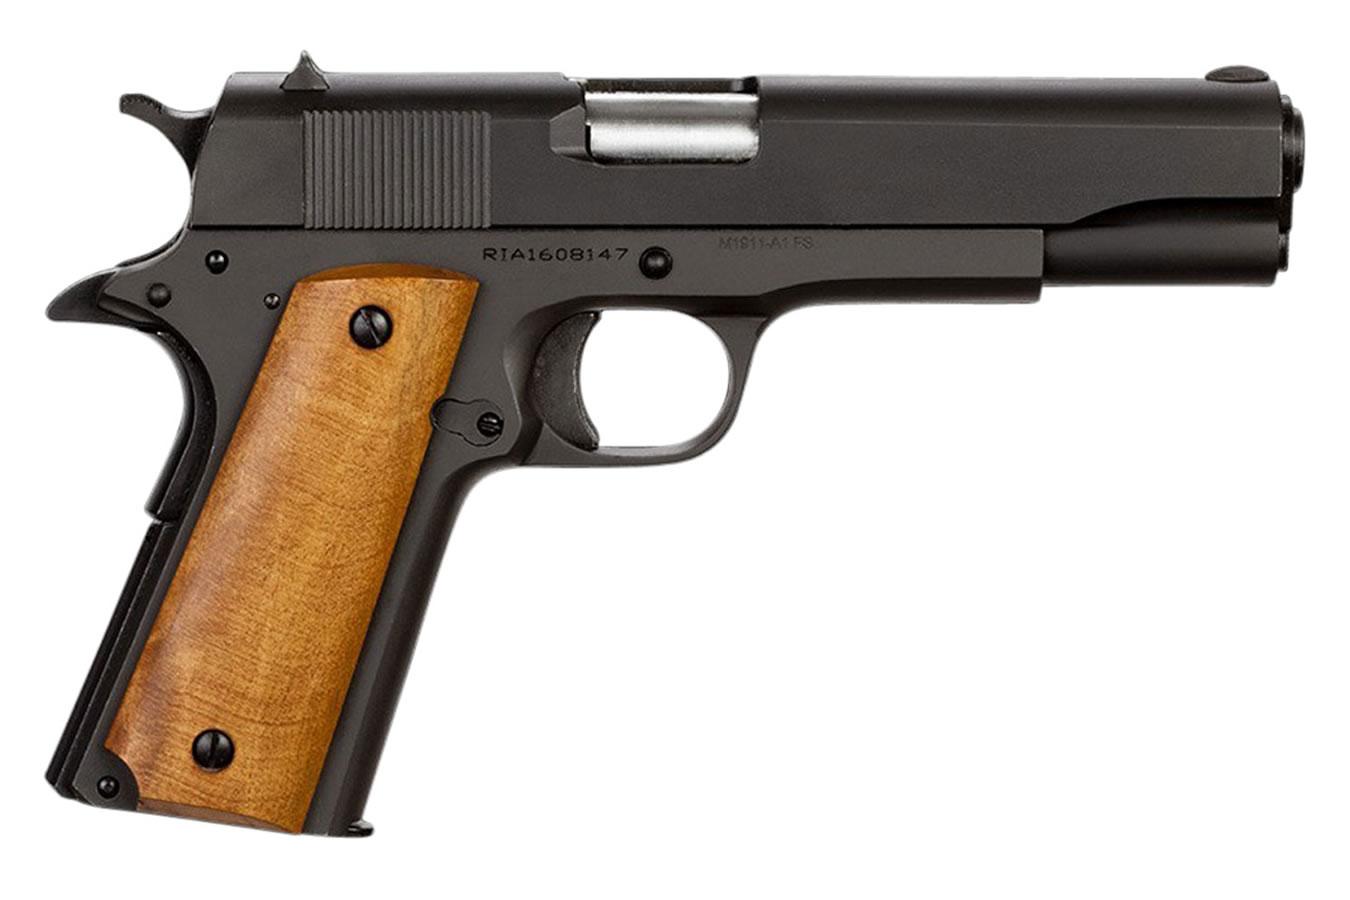 Armscor 1911 GI Standard FS Parkerized .38 Super 5-inch 9Rds - $439.99 ($9.99 S/H on Firearms)